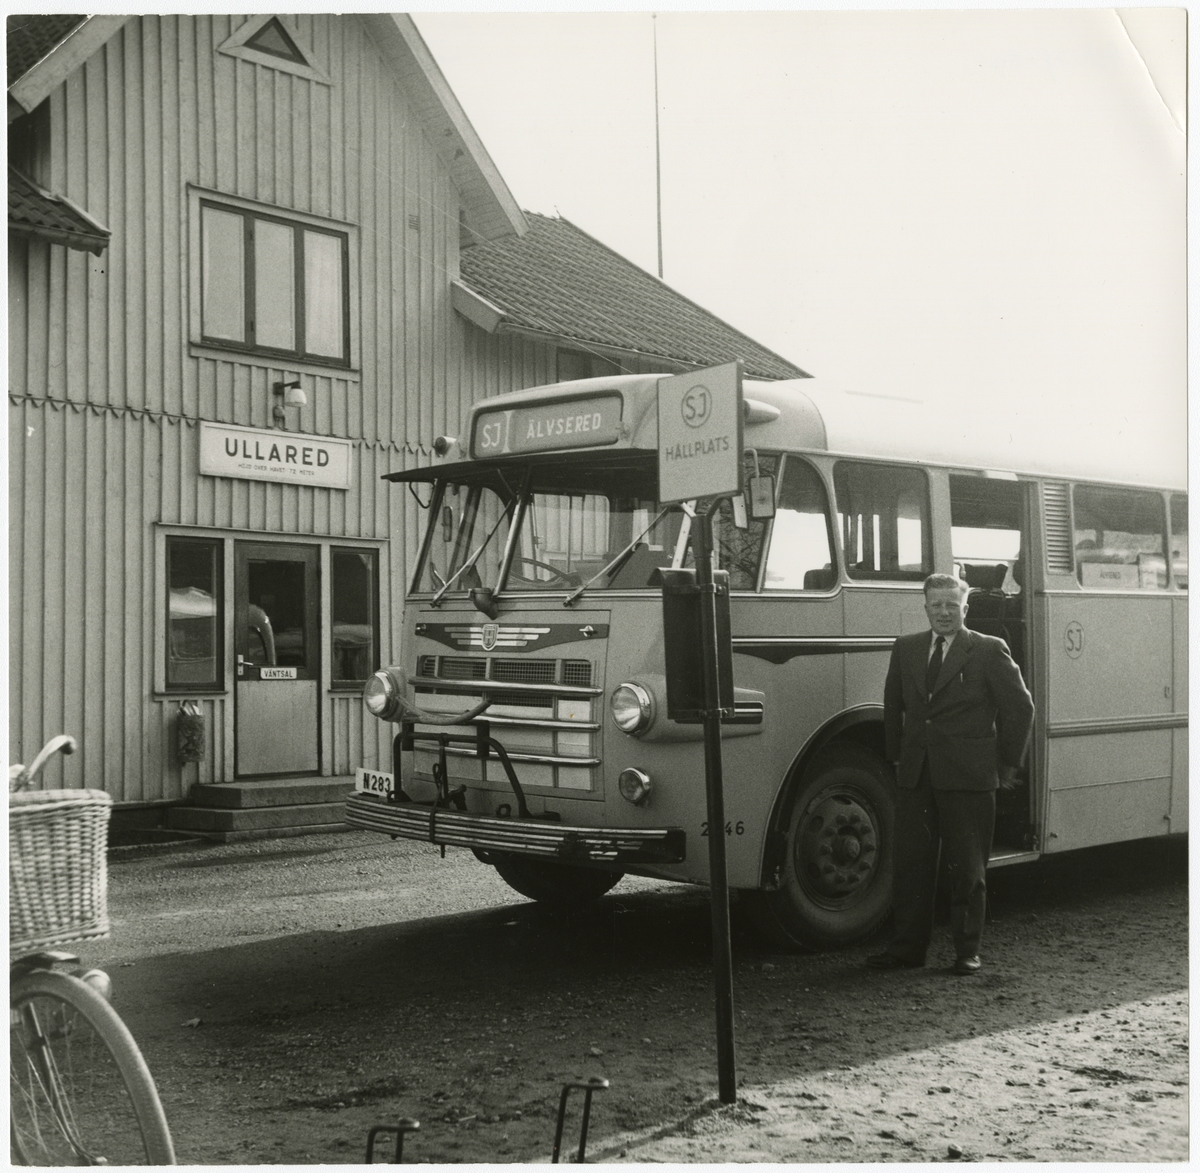 Ullared station 1959 från vägen med SJ buss, registreringsnummer N283, och förare.